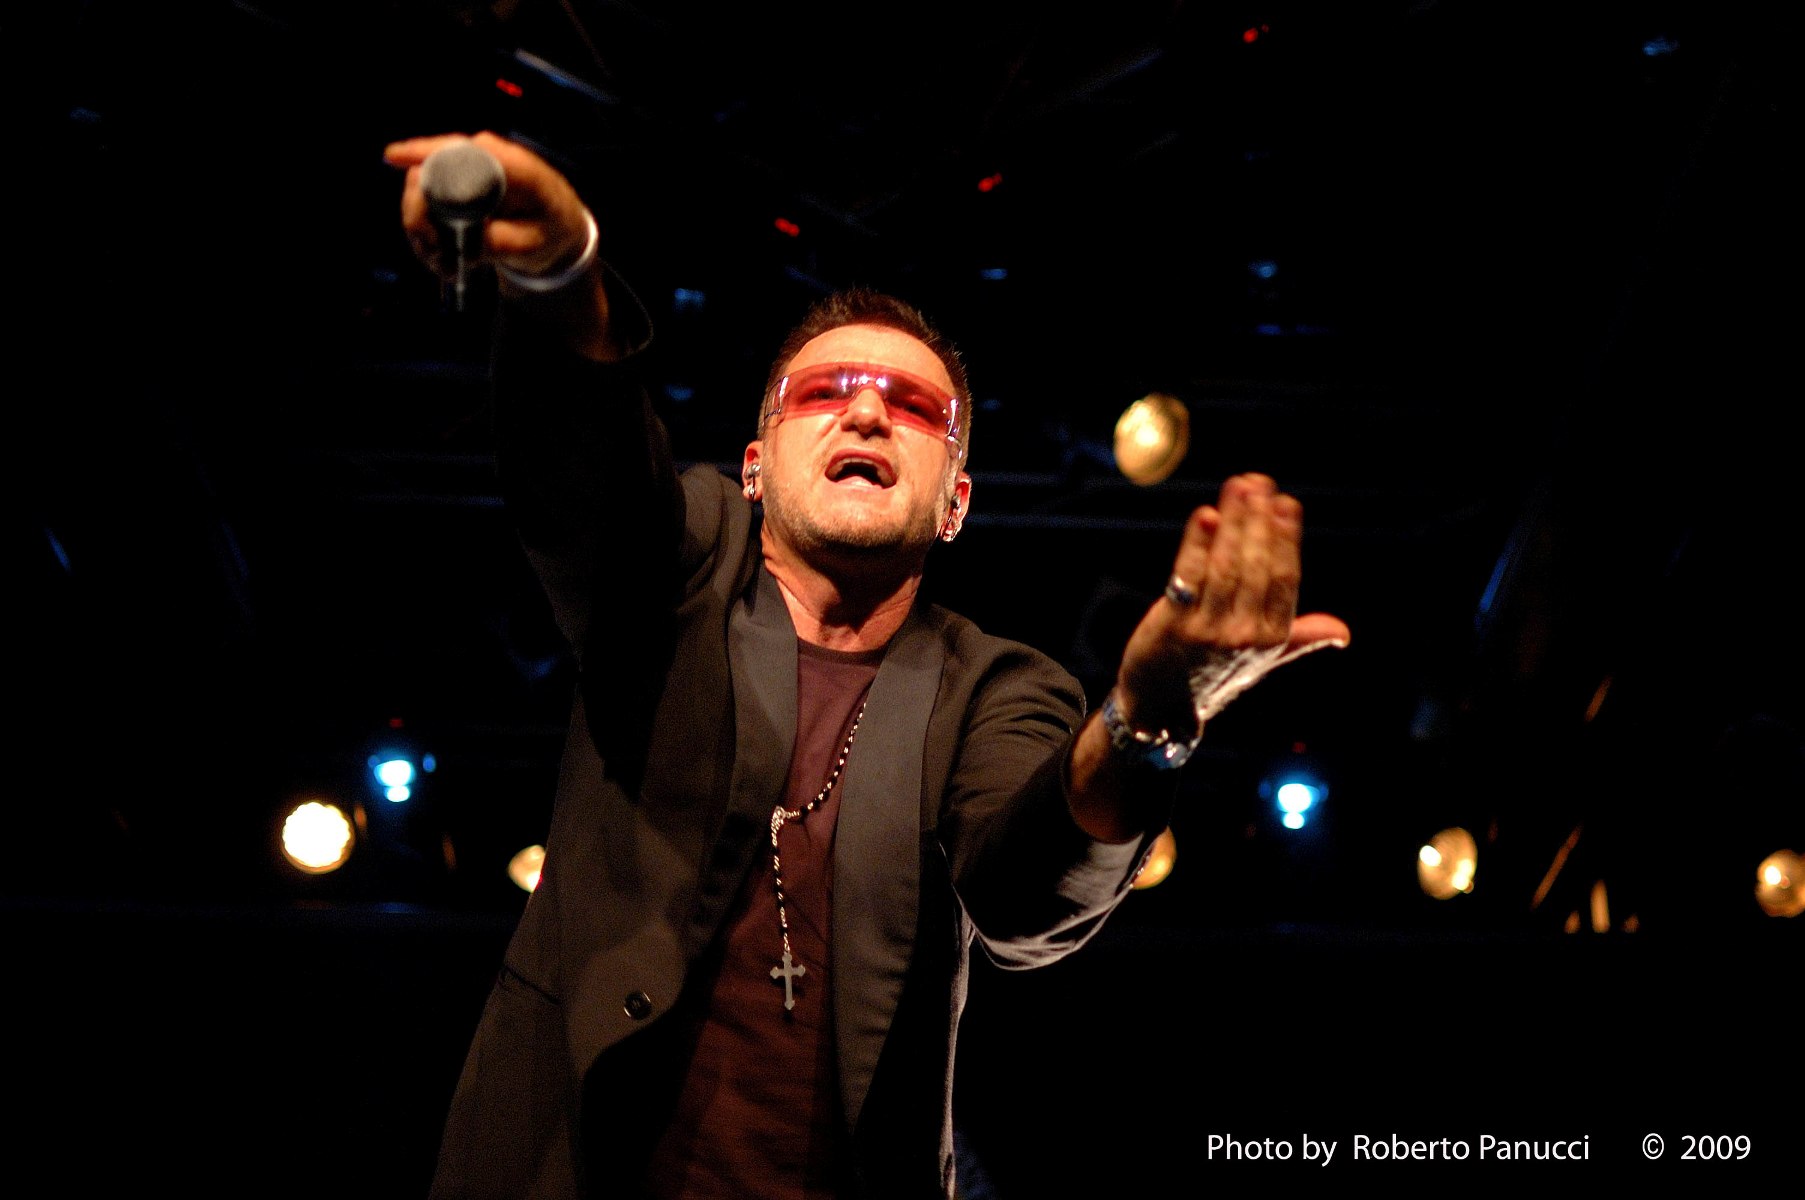 Bono - Pavel pointing